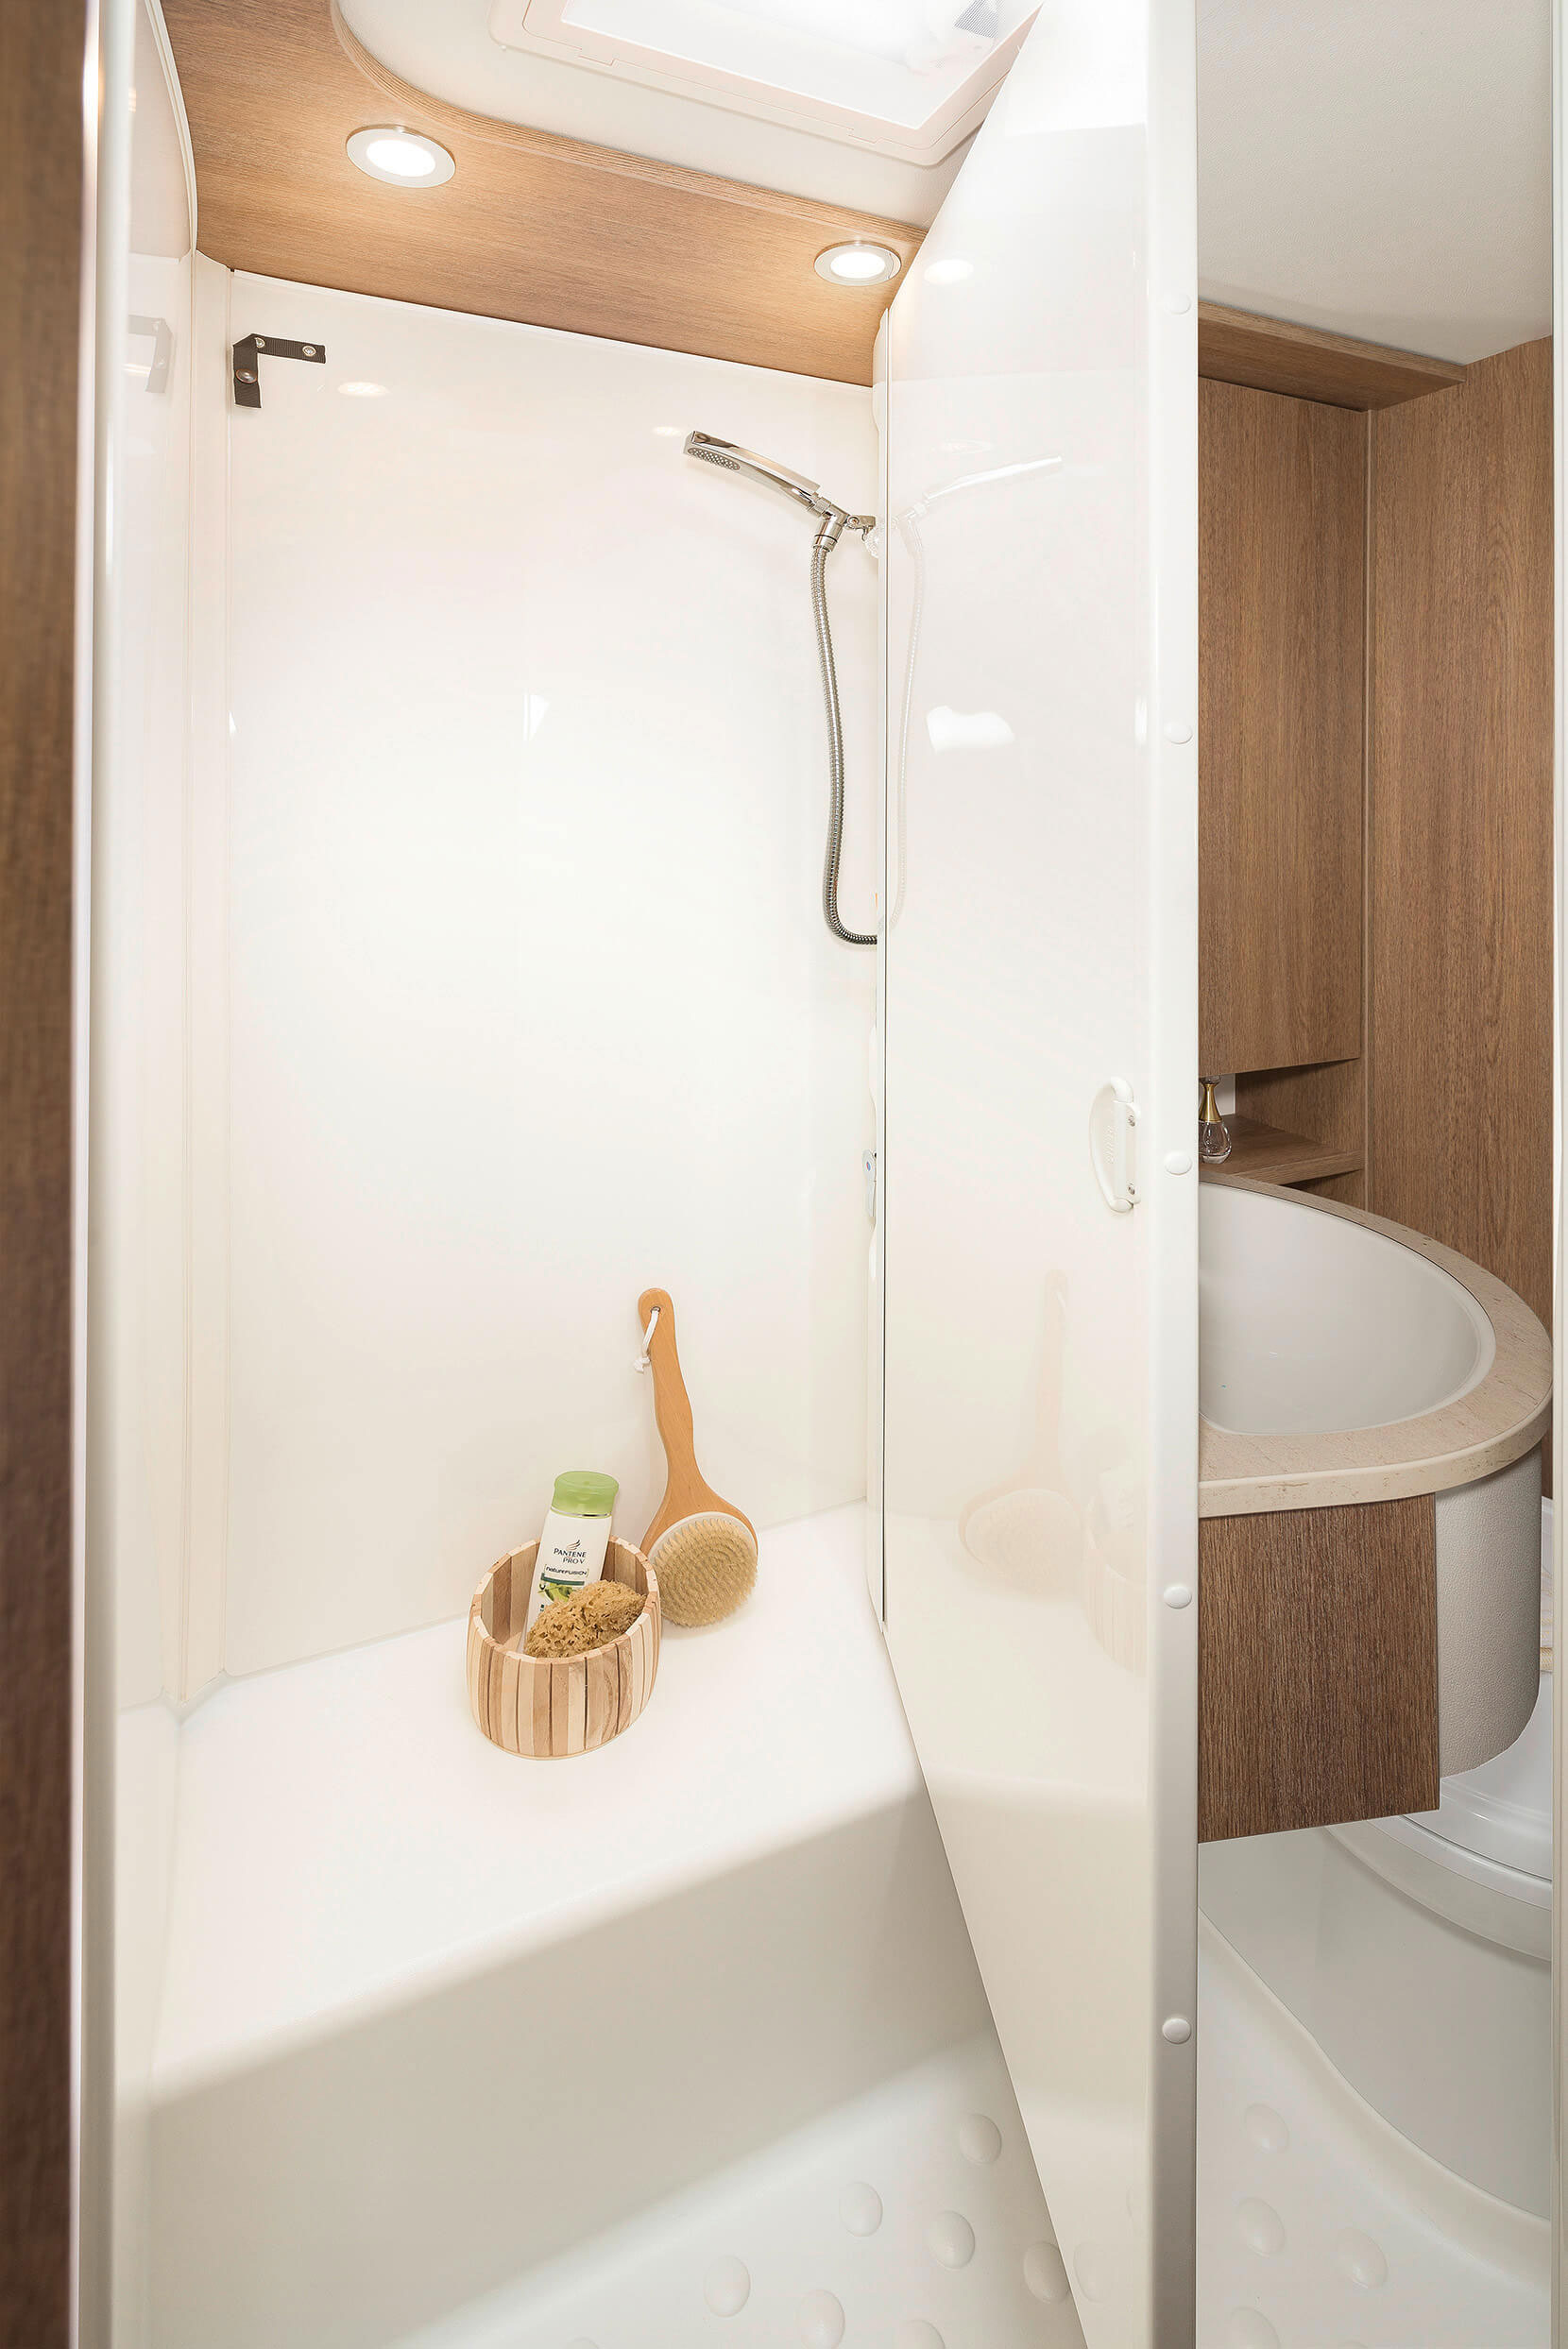 Casa de banho "Vario" com parede basculante: cabina de duche independente ou WC simplesmente virando a parede • A 5887 e A 6977